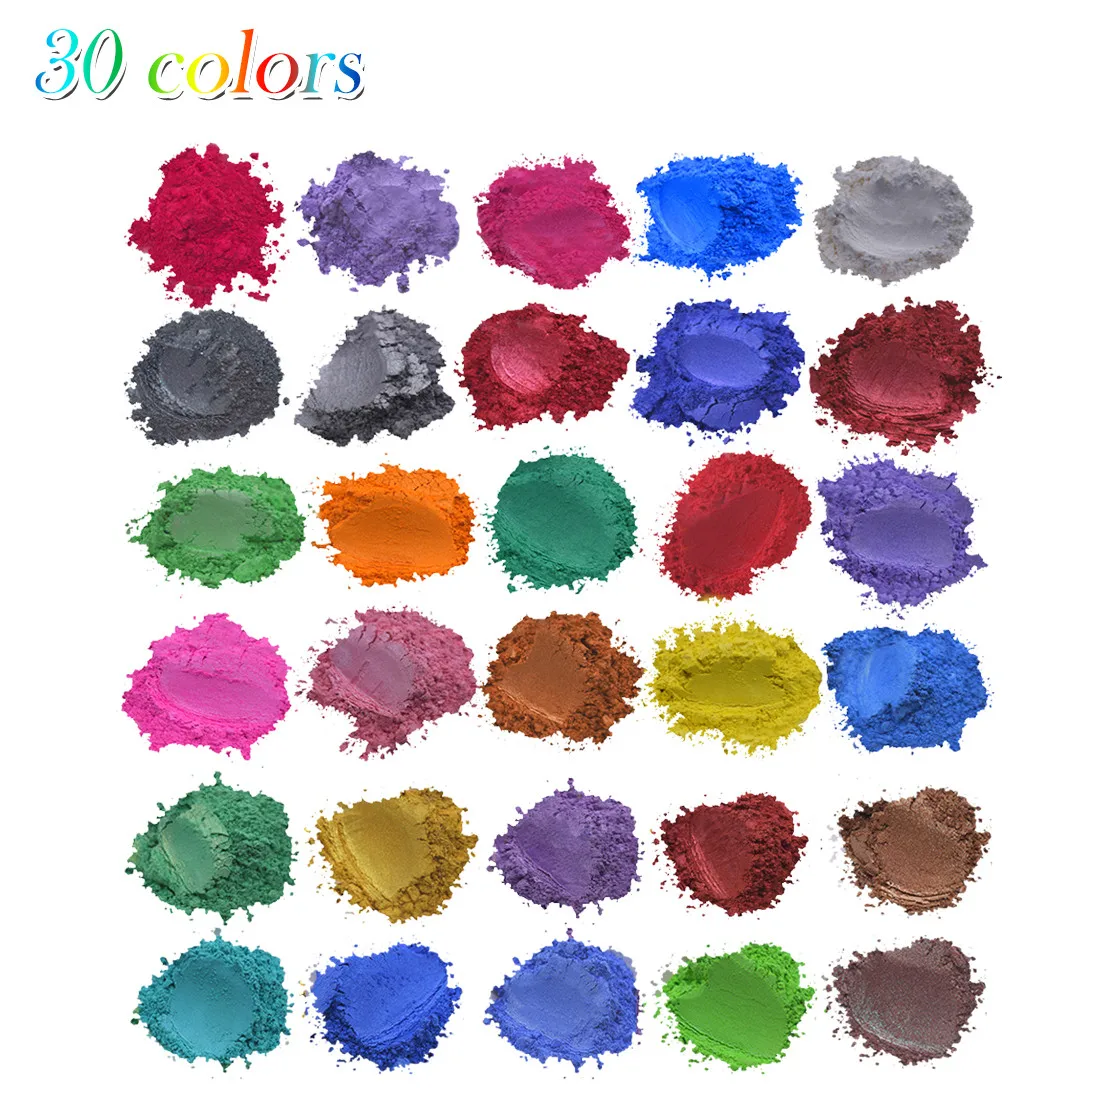 Красители для мыла эпоксидная смола металлик 30 цветов s x5g Набор для изготовления мыла цветной пигмент Порошковая слюда d90717